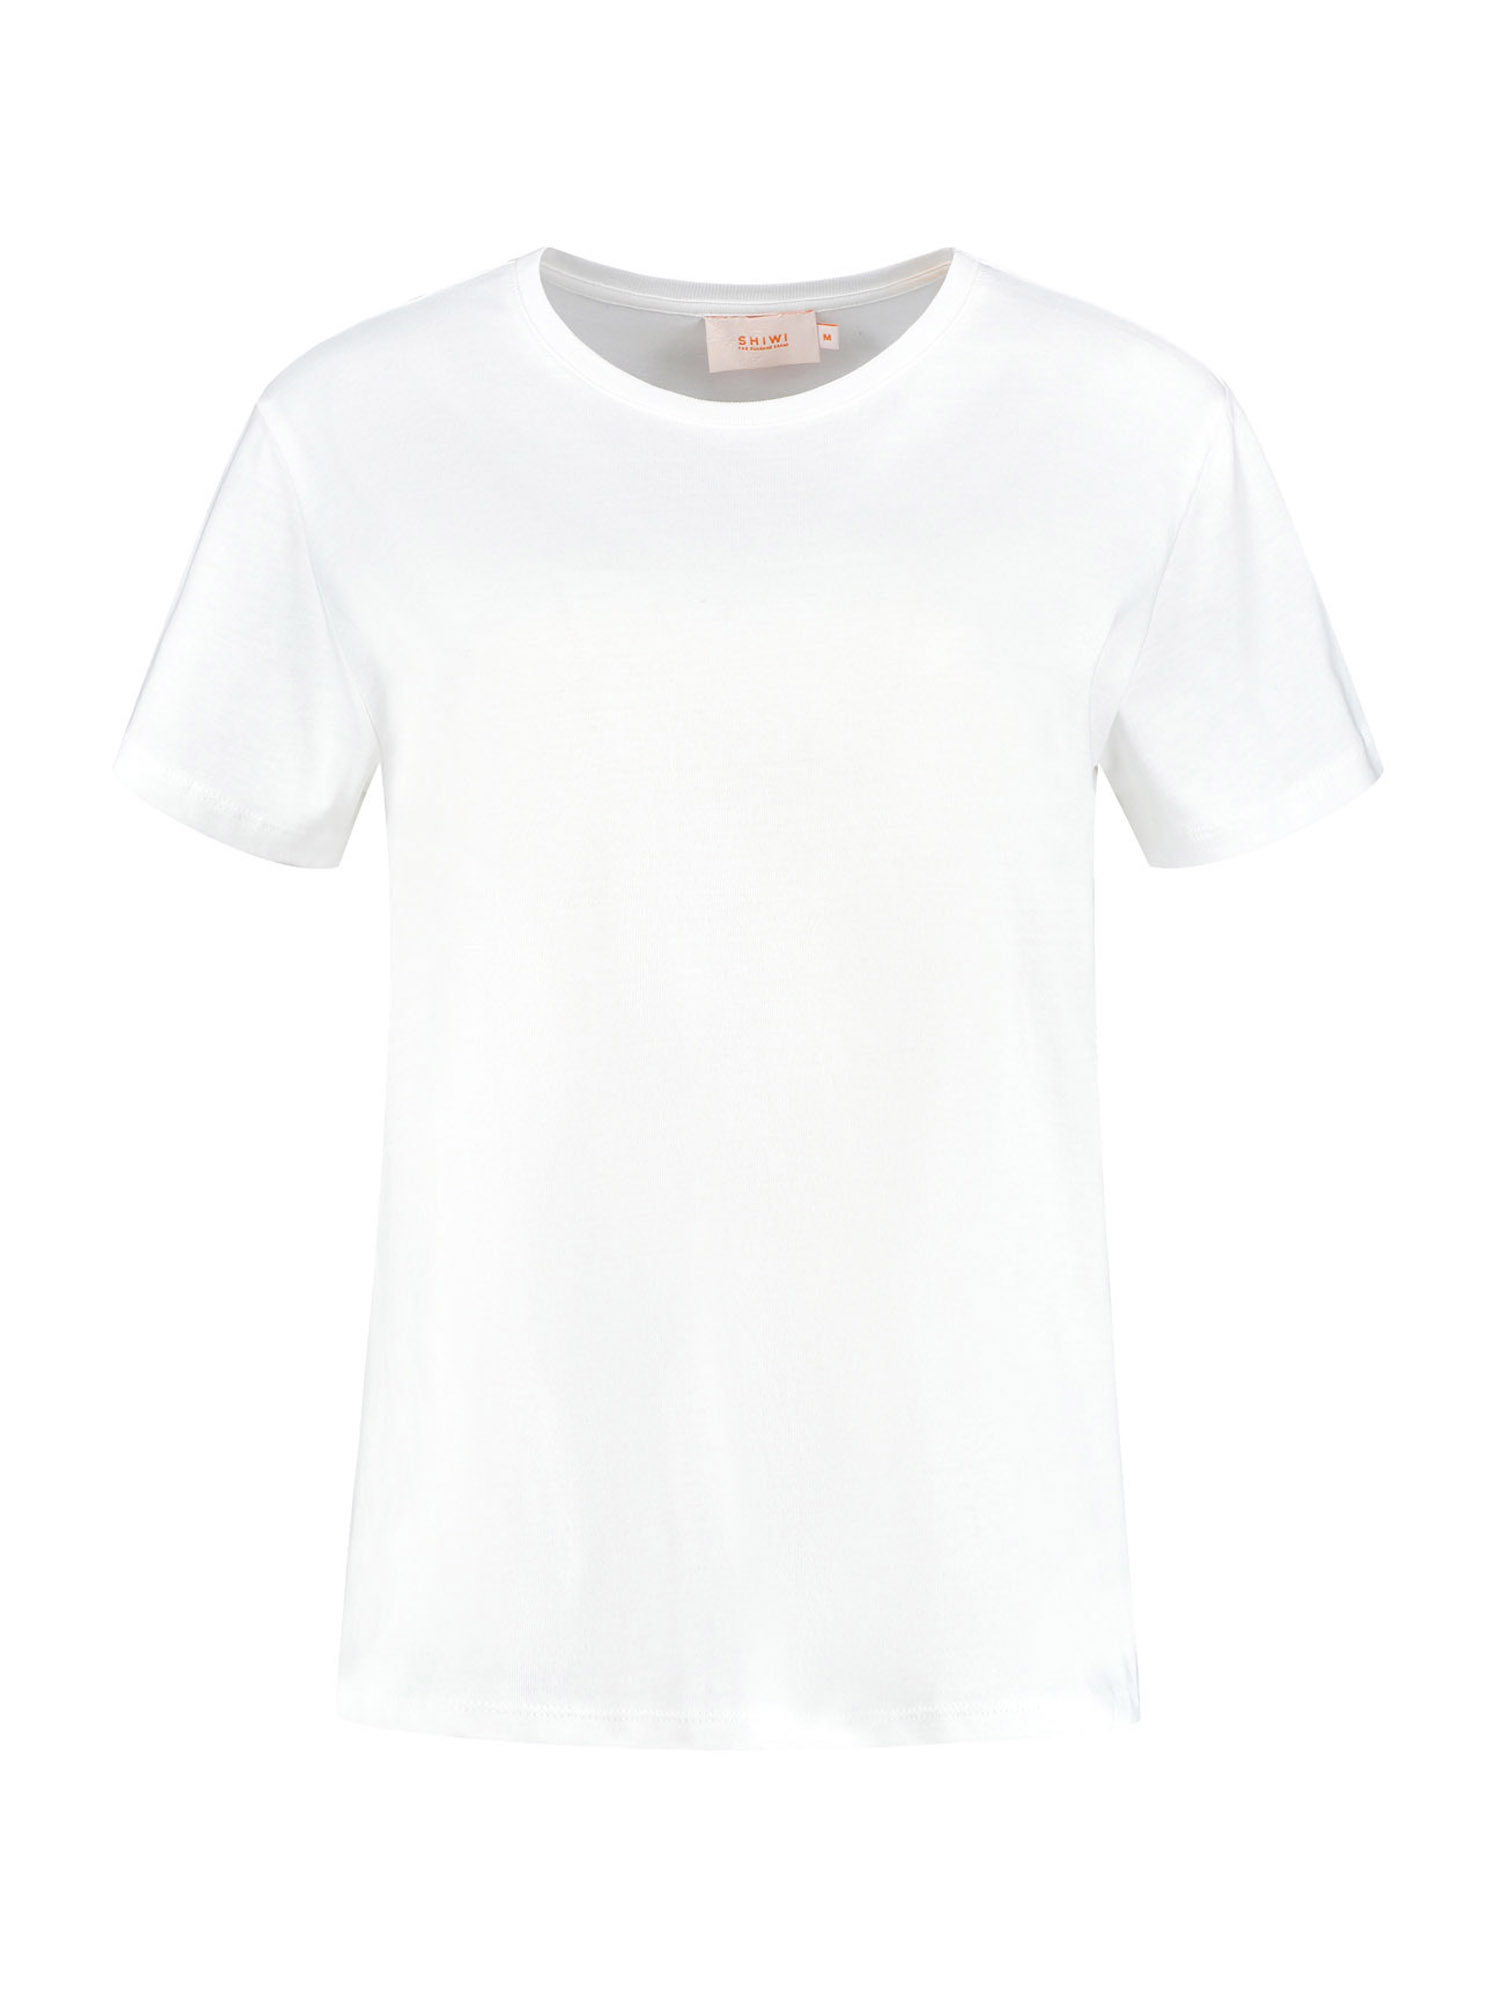 Odzież Koszulki & topy Shiwi Koszulka TARIFA w kolorze Offwhitem 